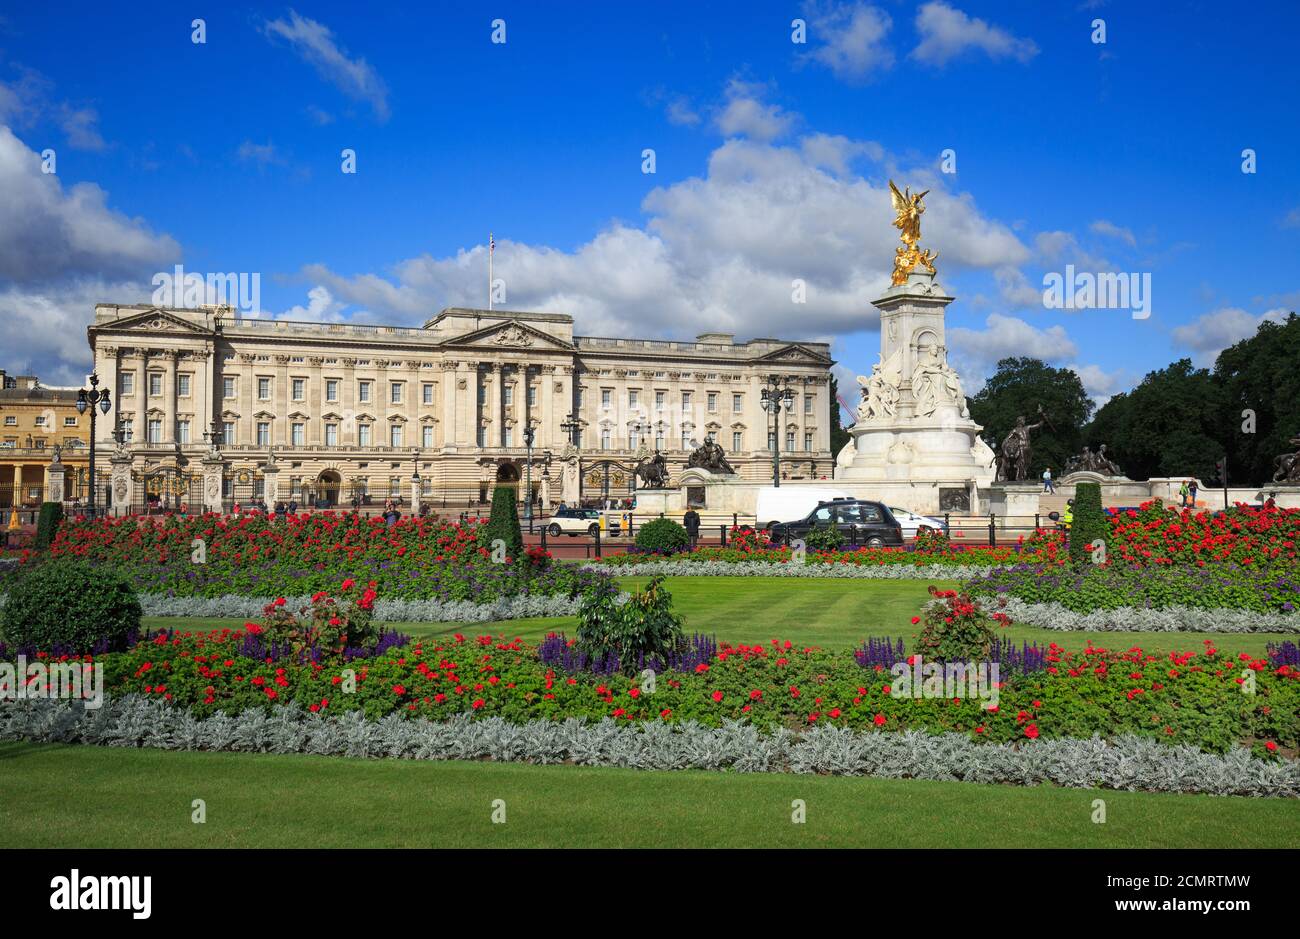 Vue panoramique de Buckingham Palace prise de Green Park, avec des massifs fleuris en pleine floraison contre un ciel bleu nuageux et pittoresque et le monument de la Reine Victoria. Banque D'Images